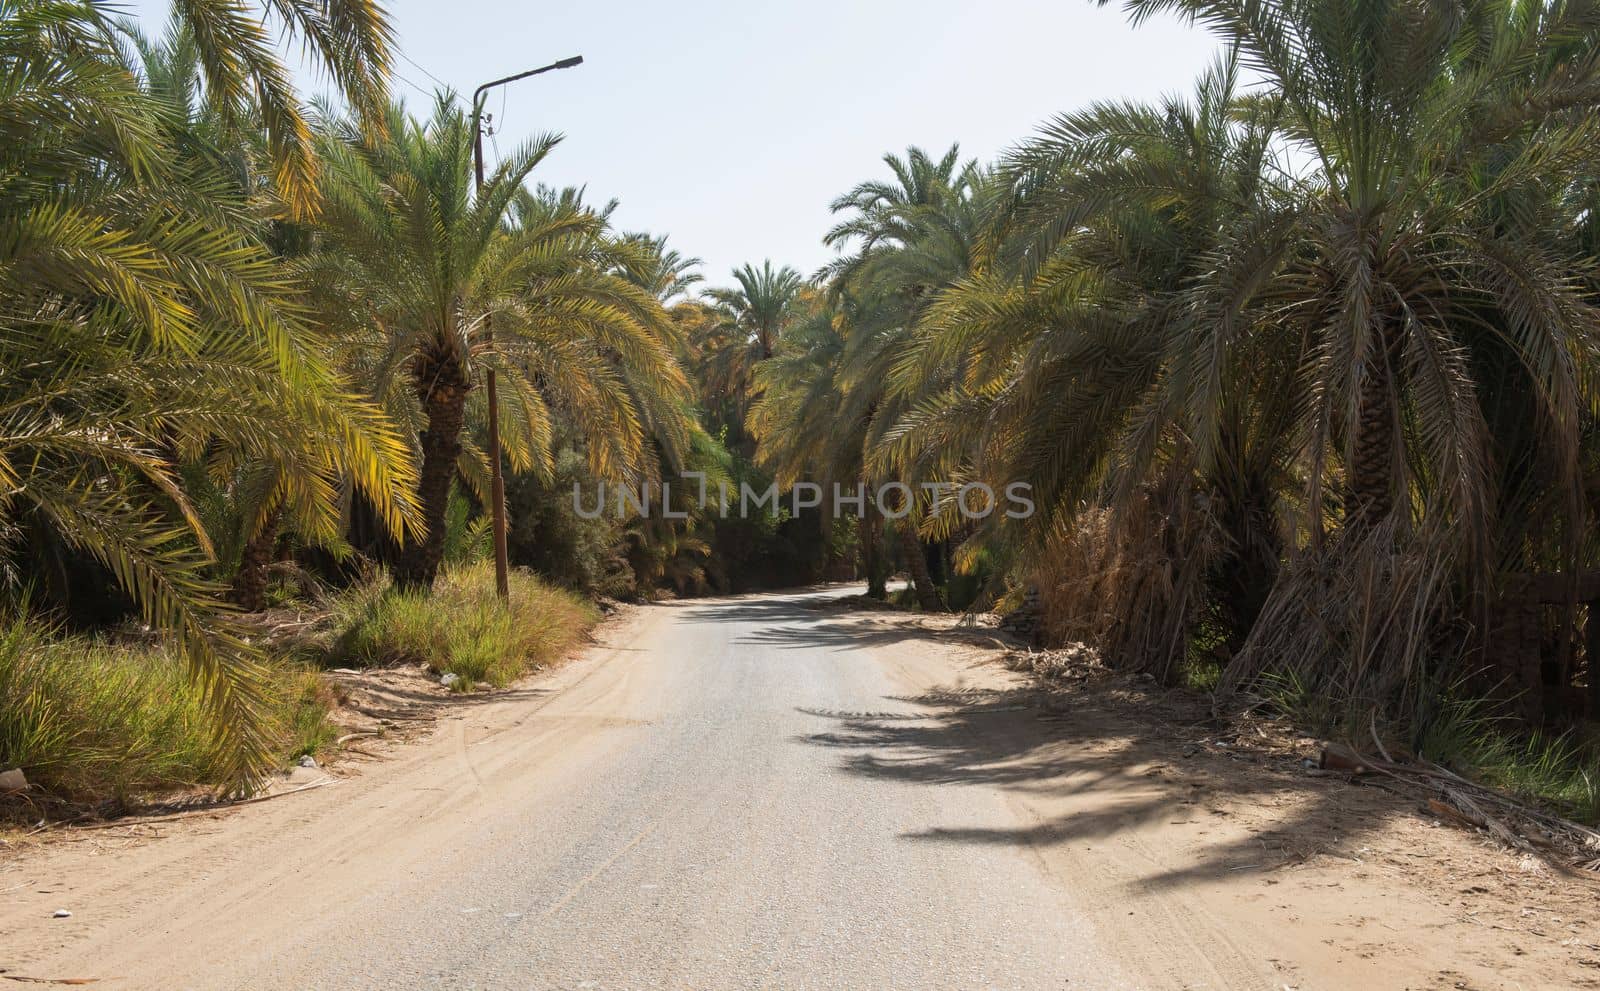 Road through a rural date palm farm area by paulvinten